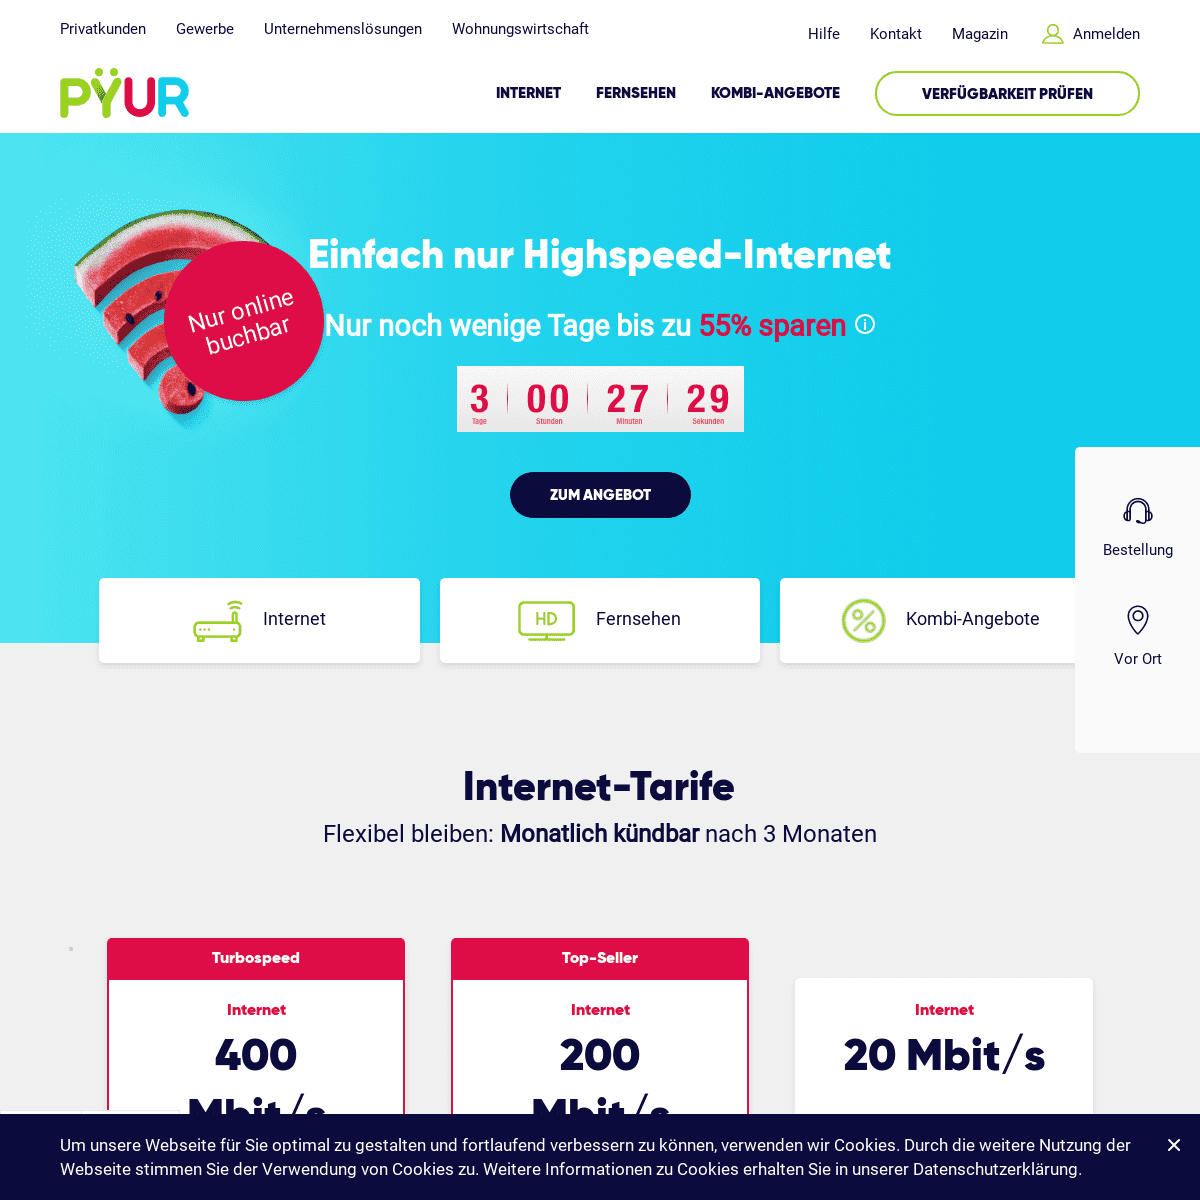 PYUR – Kabel Internet, Telefon und Fernsehen